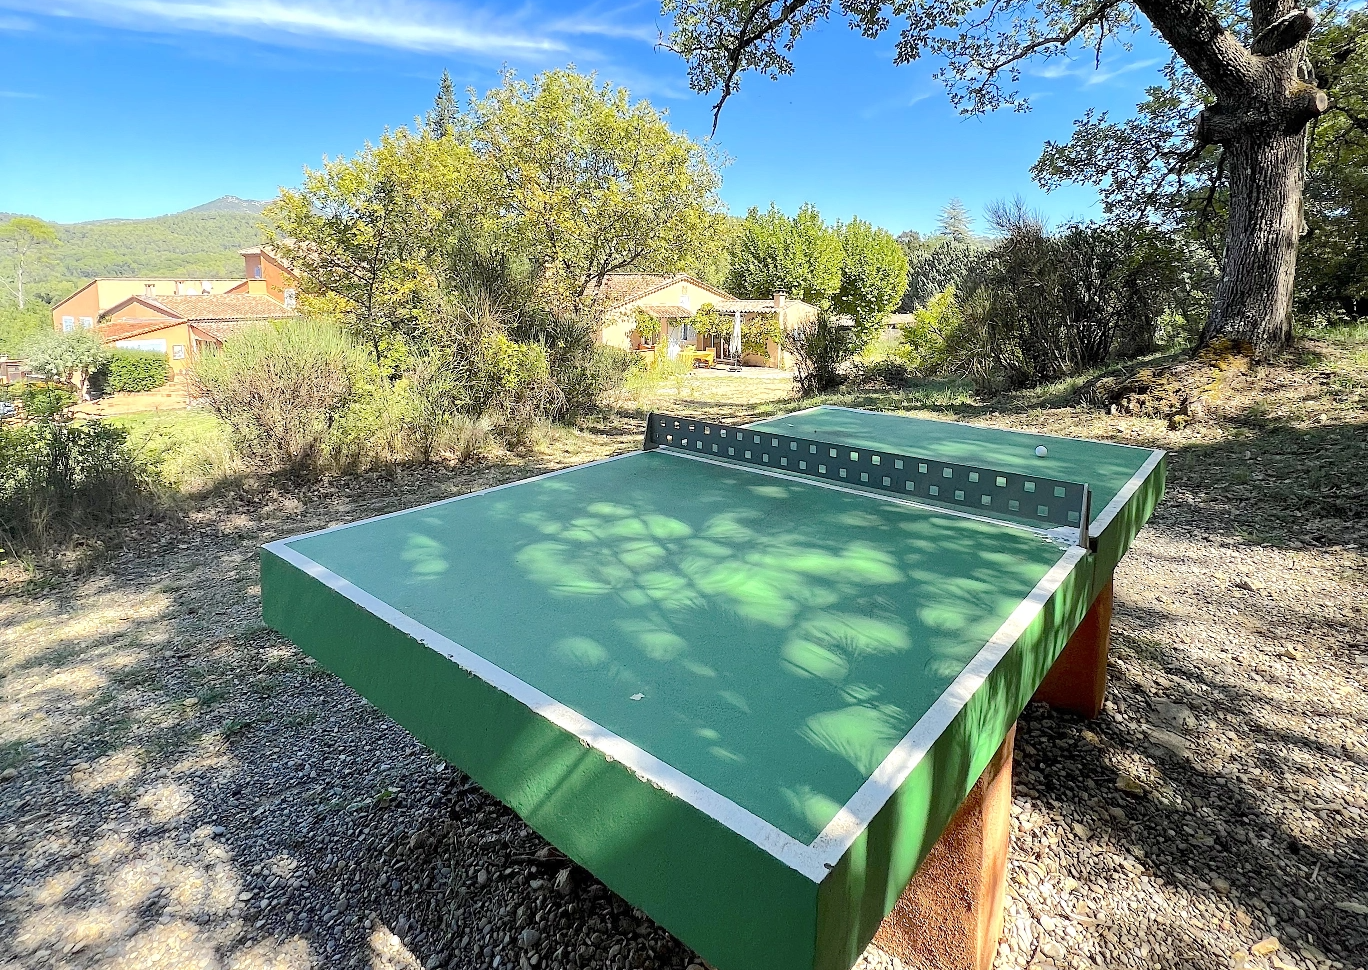 Table de ping pong à disposition sous le soleil de la French Riviera